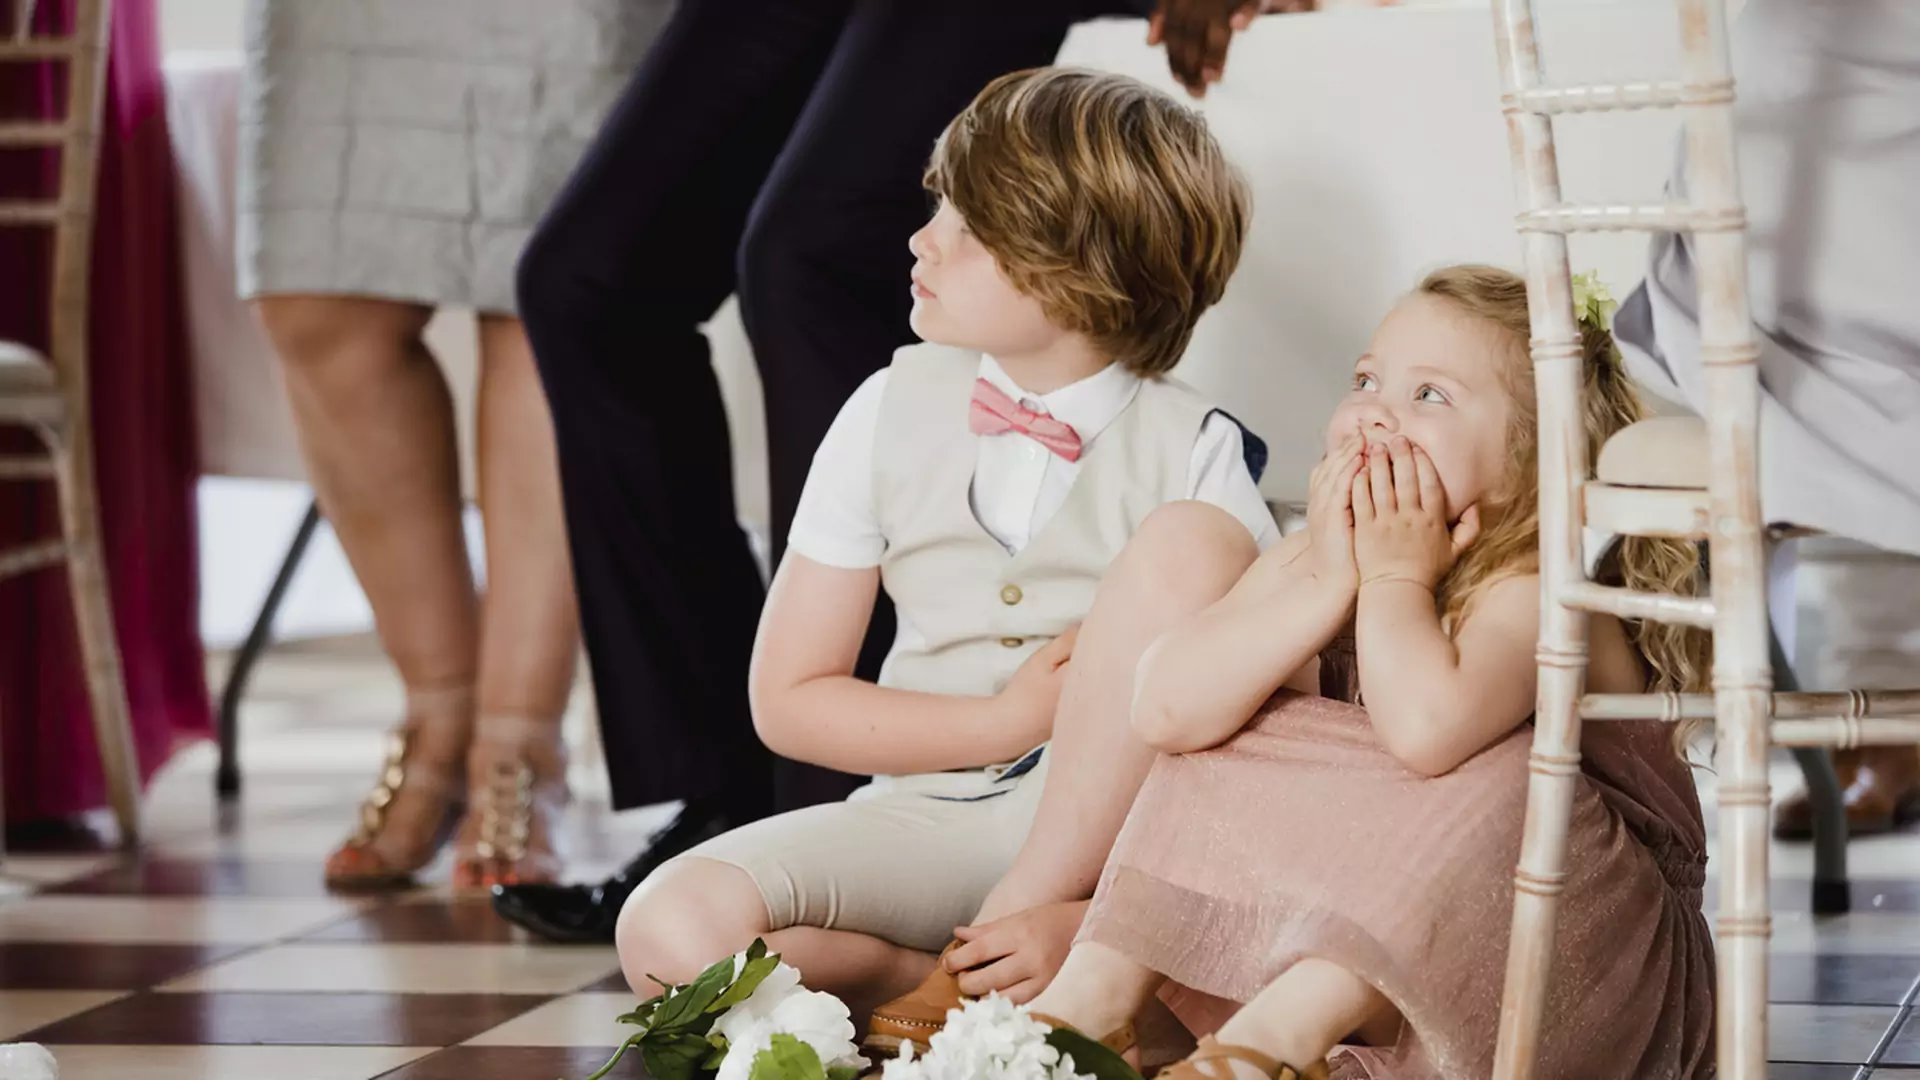 "Kobiety zabierają małe dzieci na wesela, żeby się pochwalić". Czy matki chcą zrujnować ślub młodym?